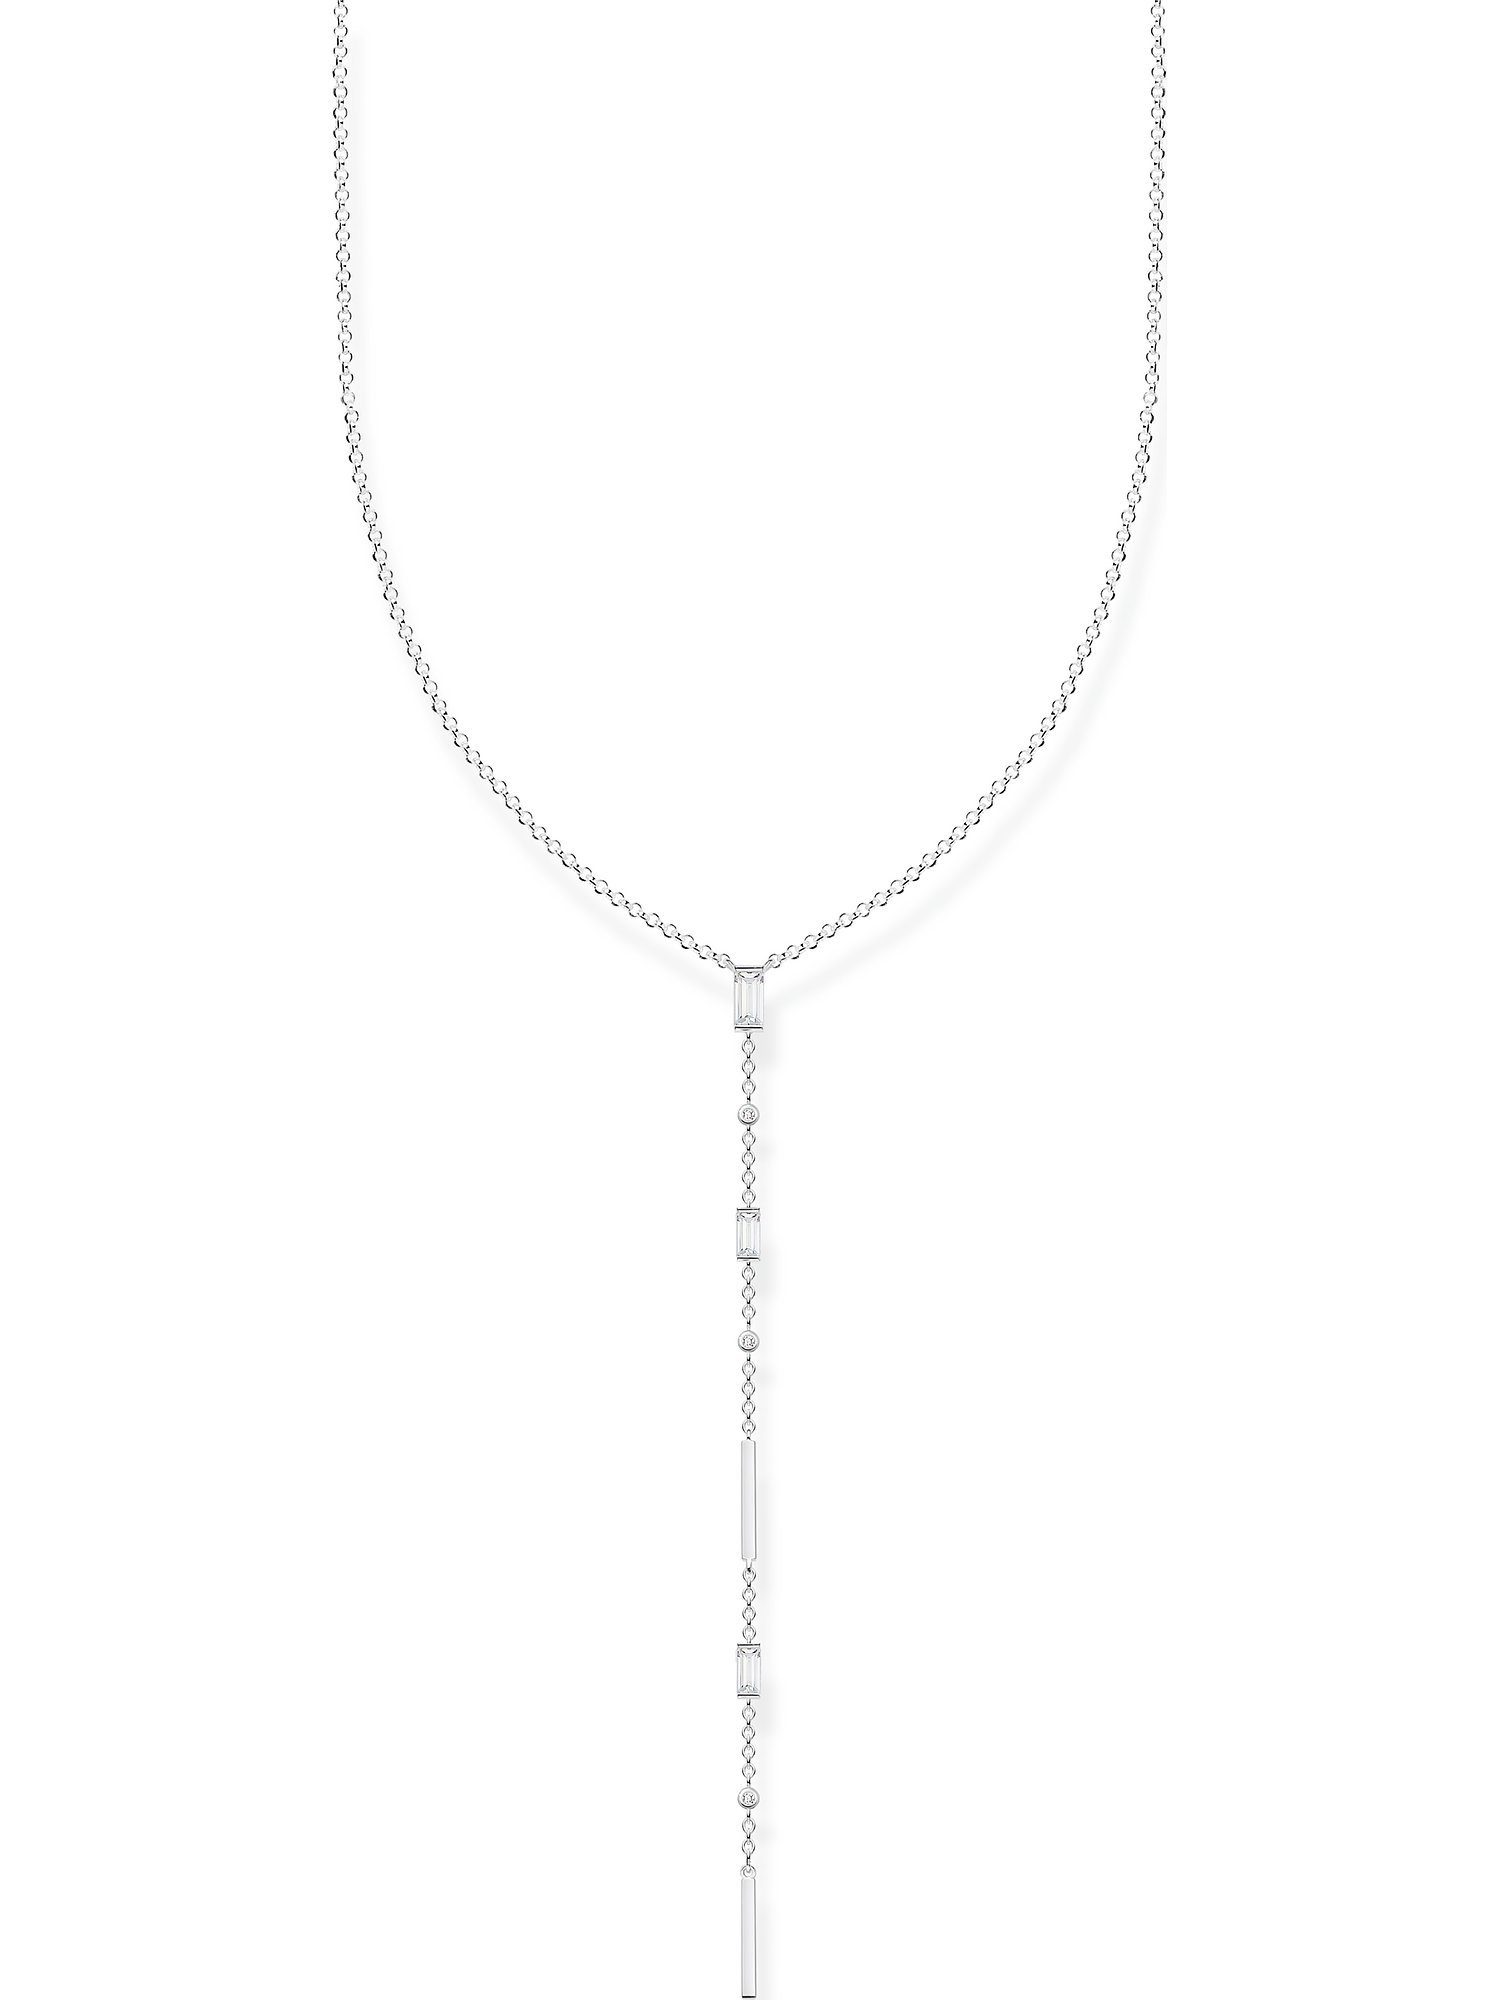 THOMAS SABO Silberkette Thomas Sabo Damen-Kette 925er Silber Zirkonia,  Länge: 45 cm, Breite: 0,4 cm, Stärke: 0,1 mm